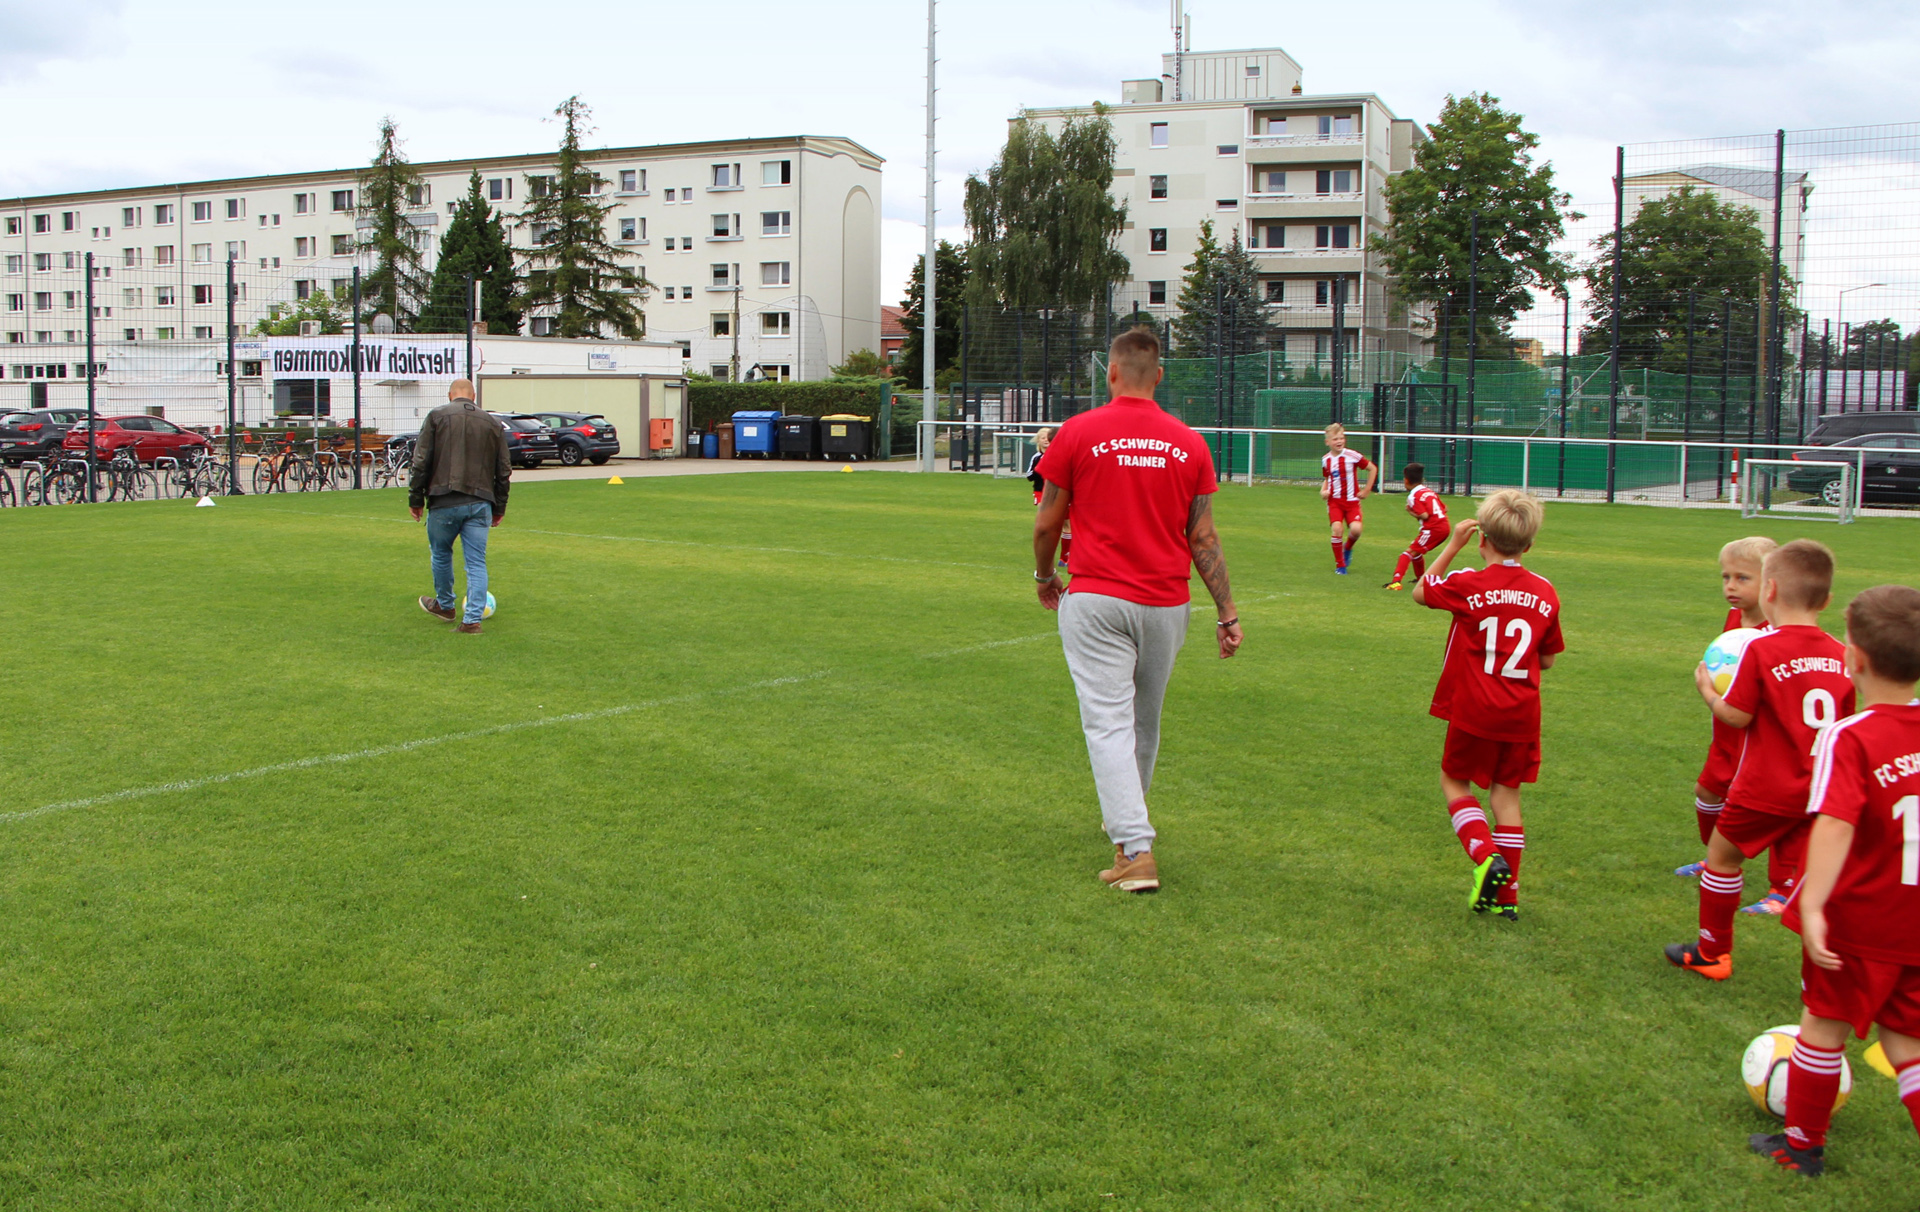 Foto: Fußballmannschaft in roten Trikots läuft auf dem grünen Rasen dem Trainer hinterher